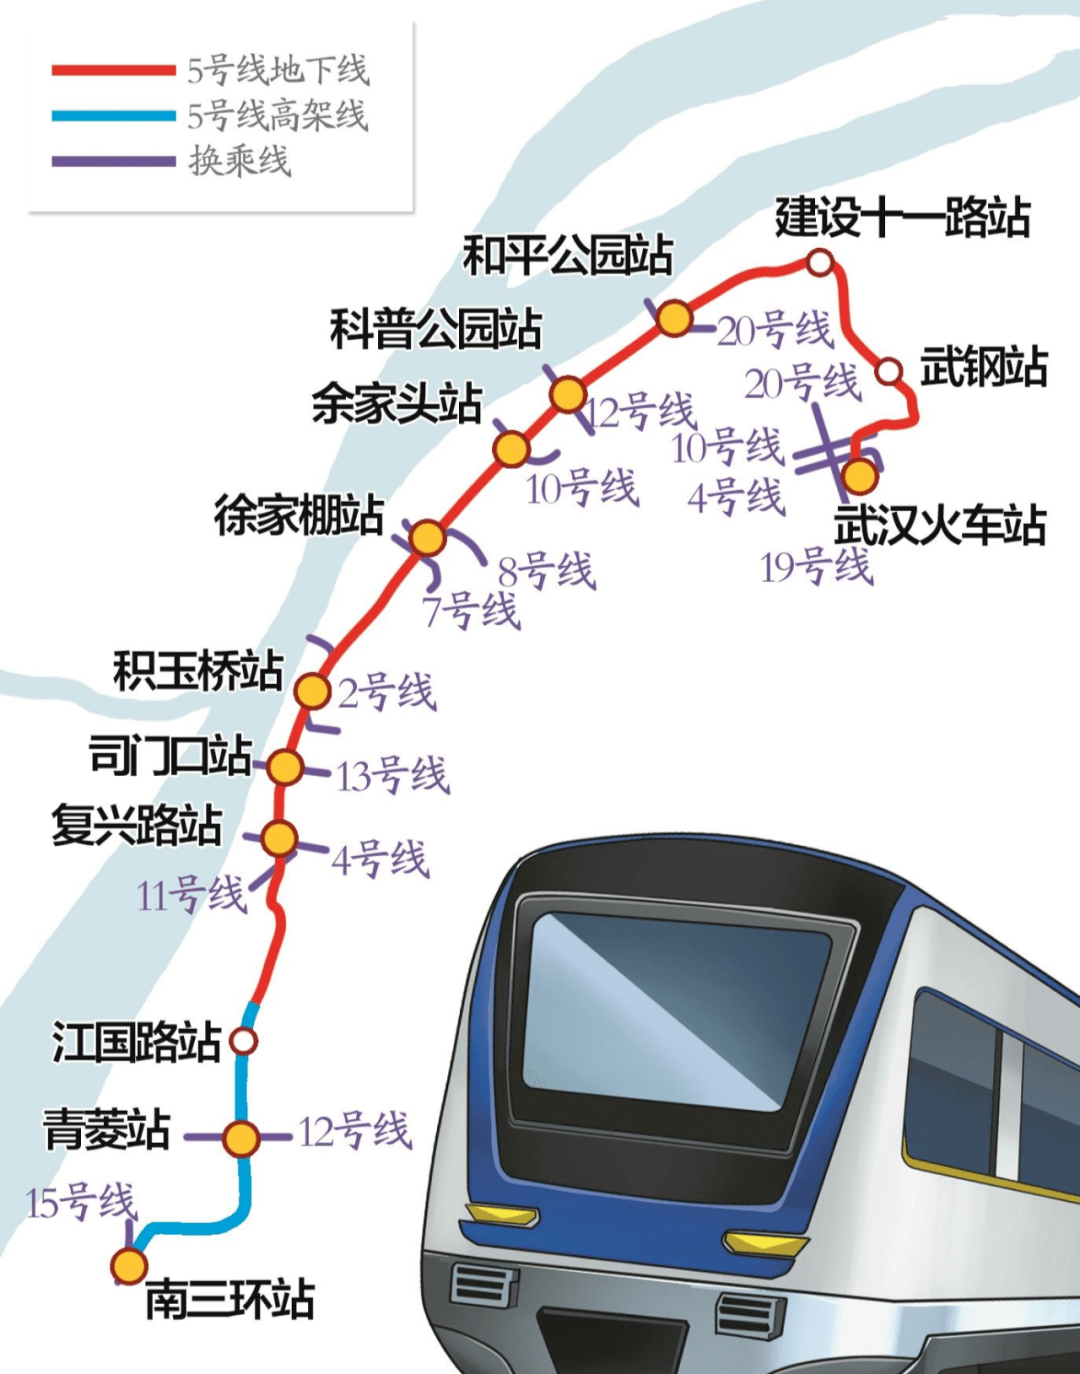 武汉轨道交通5号线工程是城市轨道交通网络规划中市区骨架线网的重要